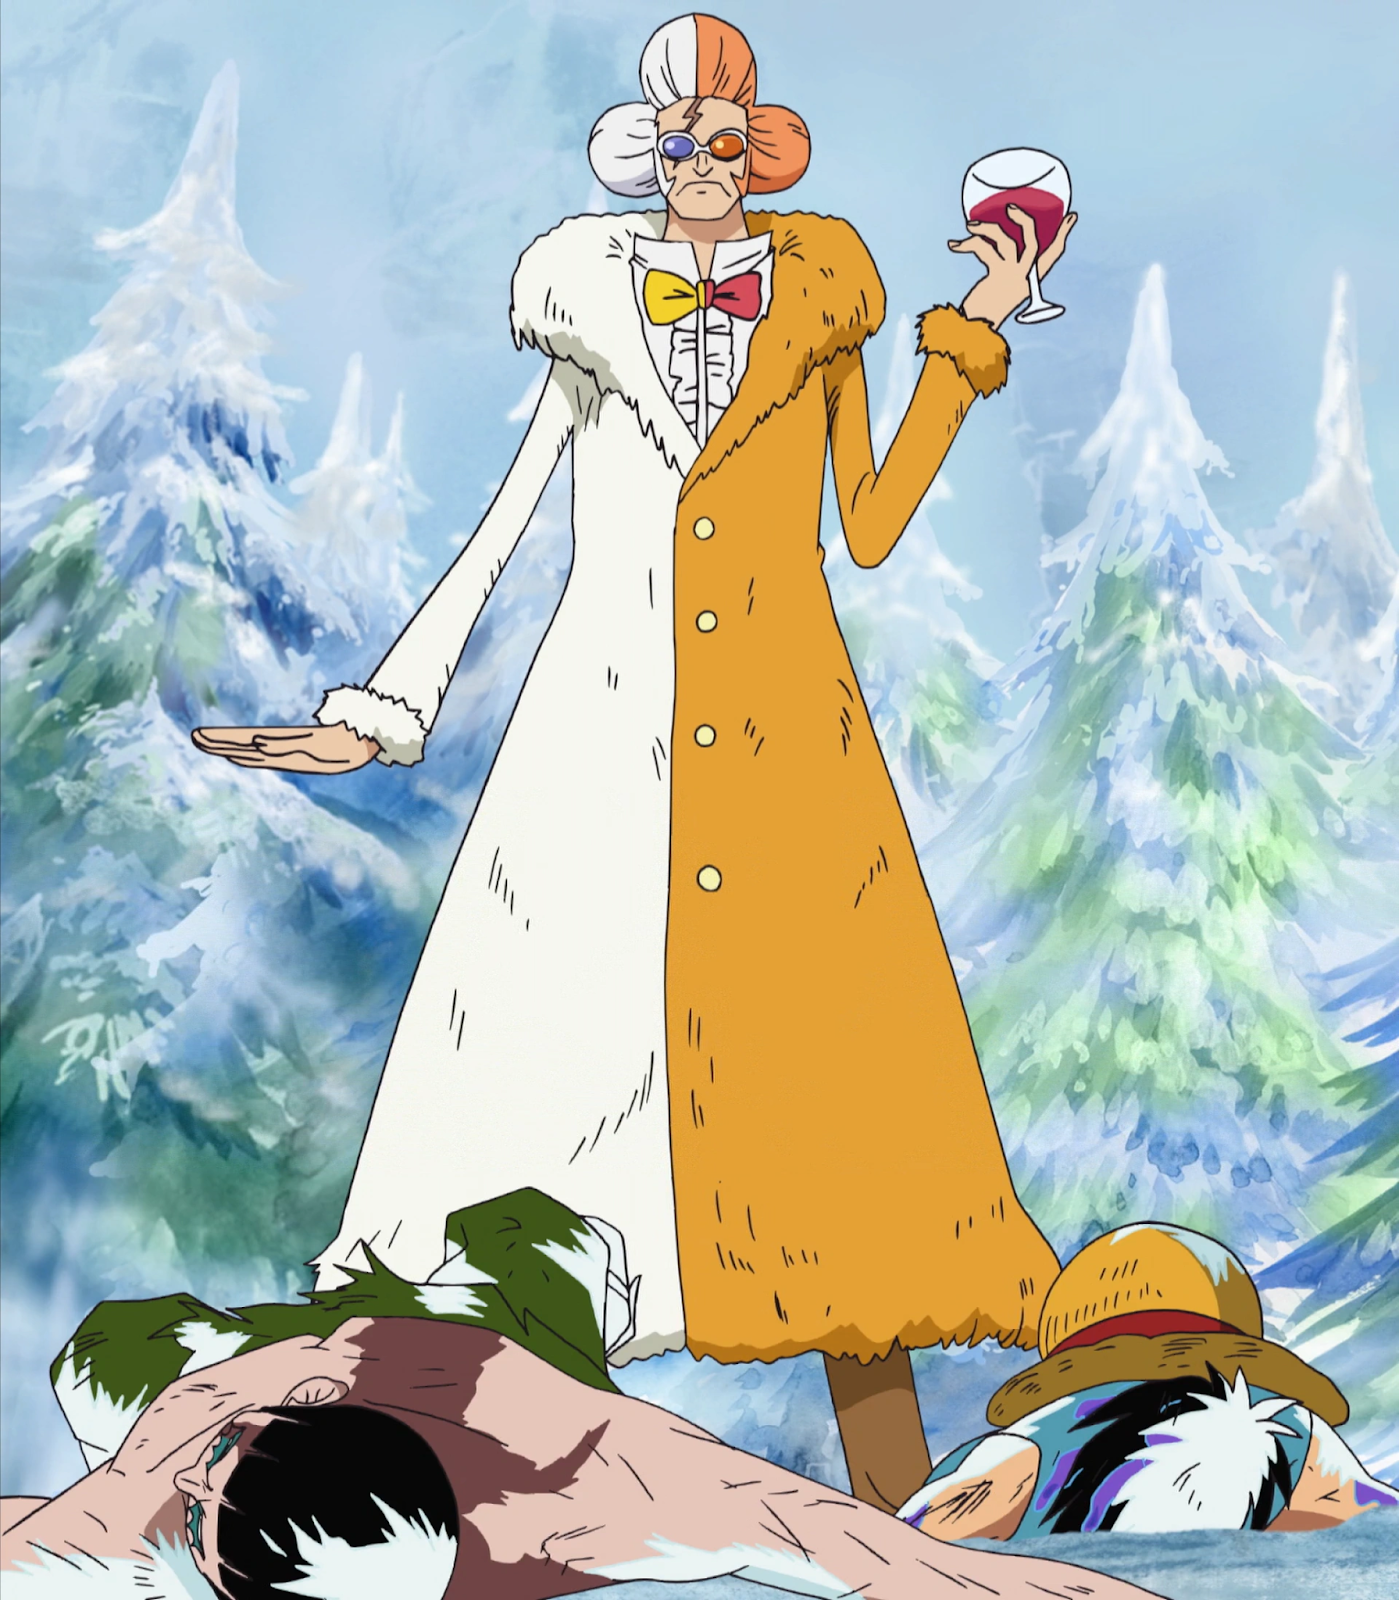 Inazuma in One Piece